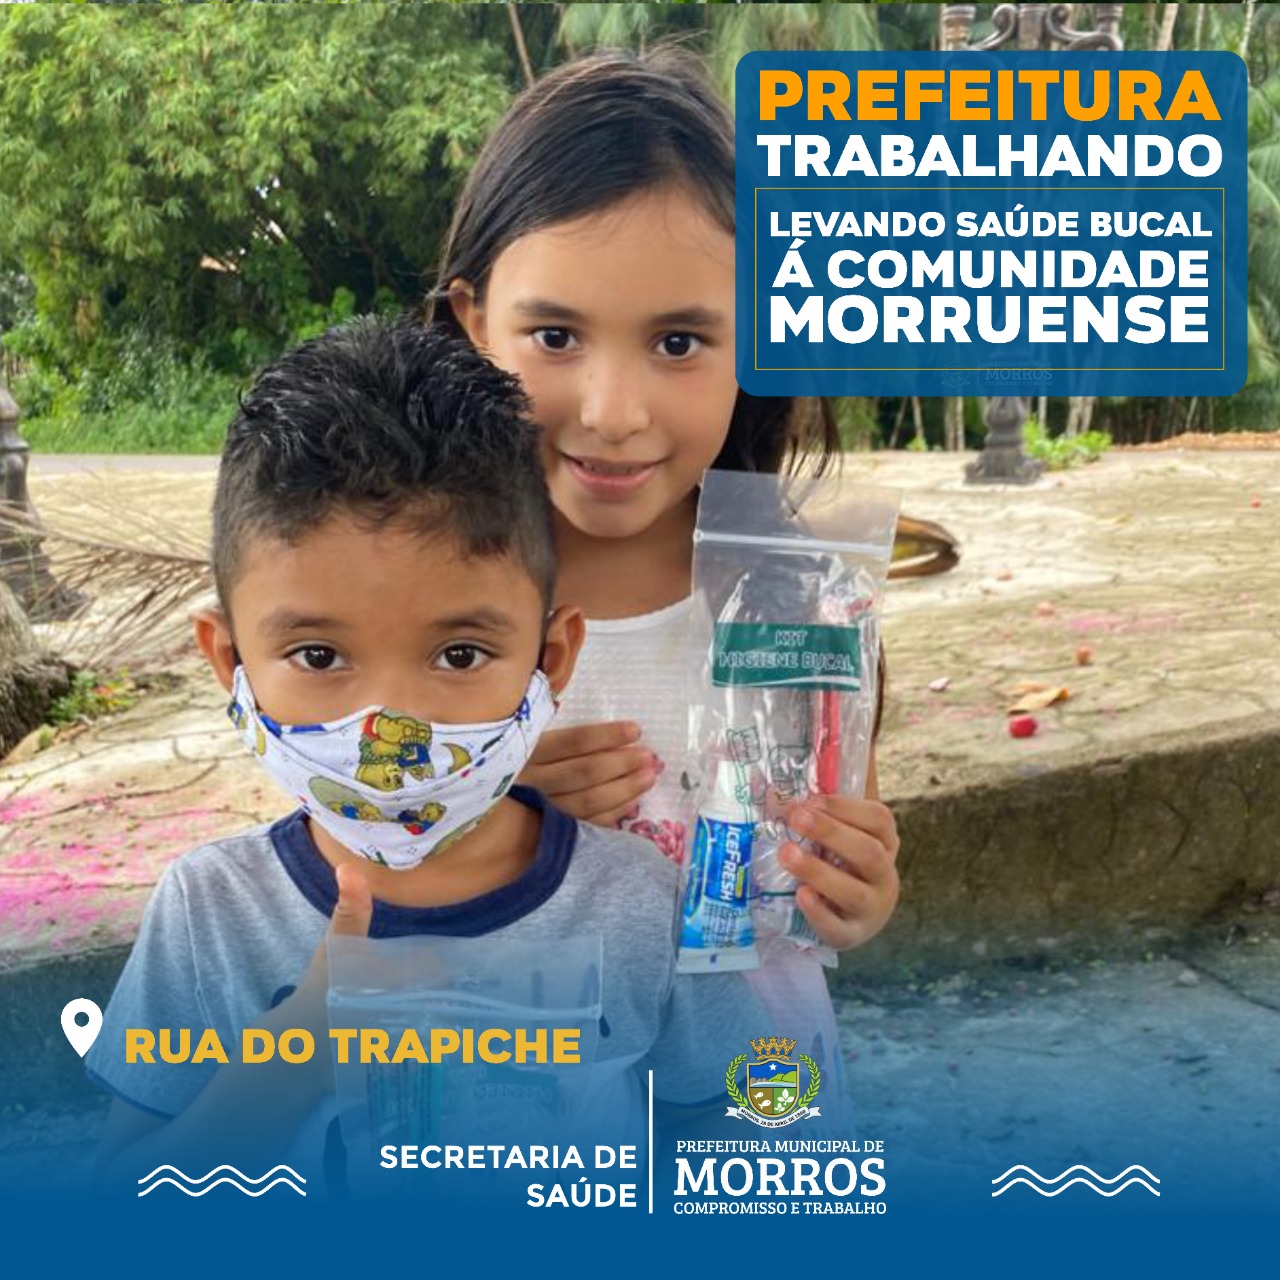 A Prefeitura Municipal de Morros, através da Secretaria de Saúde segue realizando semanalmente ações de saúde bucal